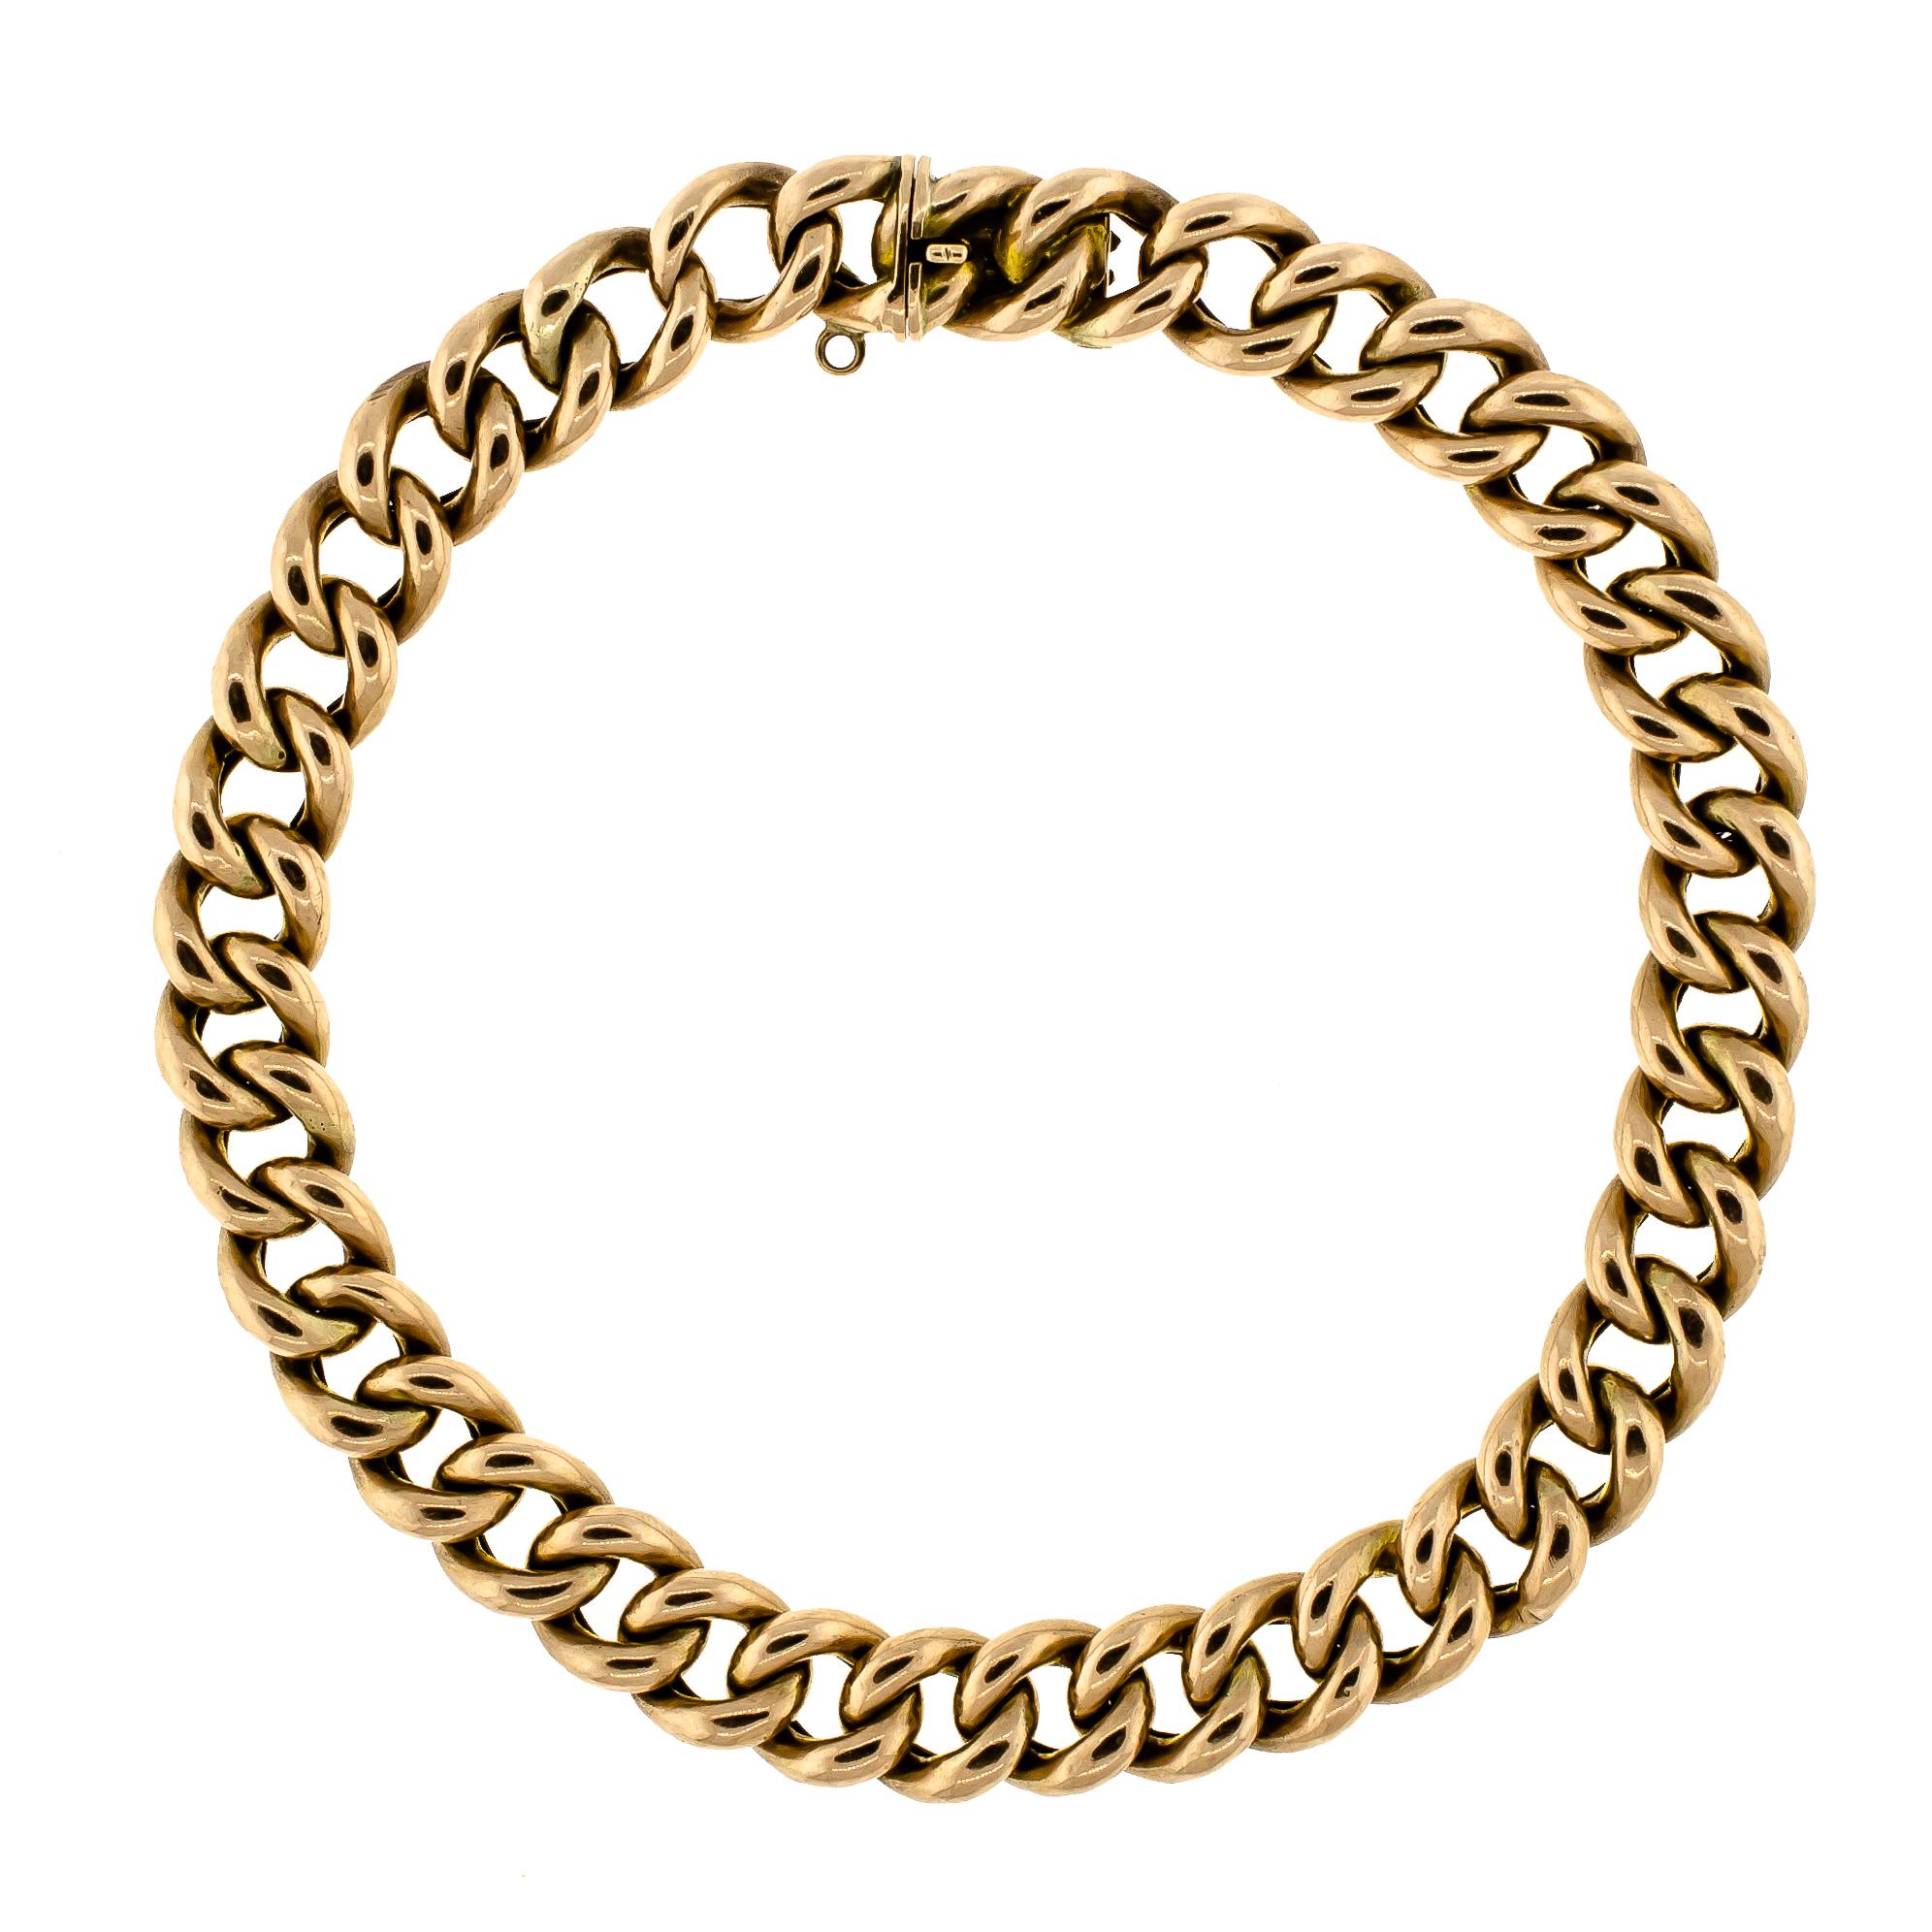 English 9 Carat Yellow Gold Curb Link Bracelet, circa 1900